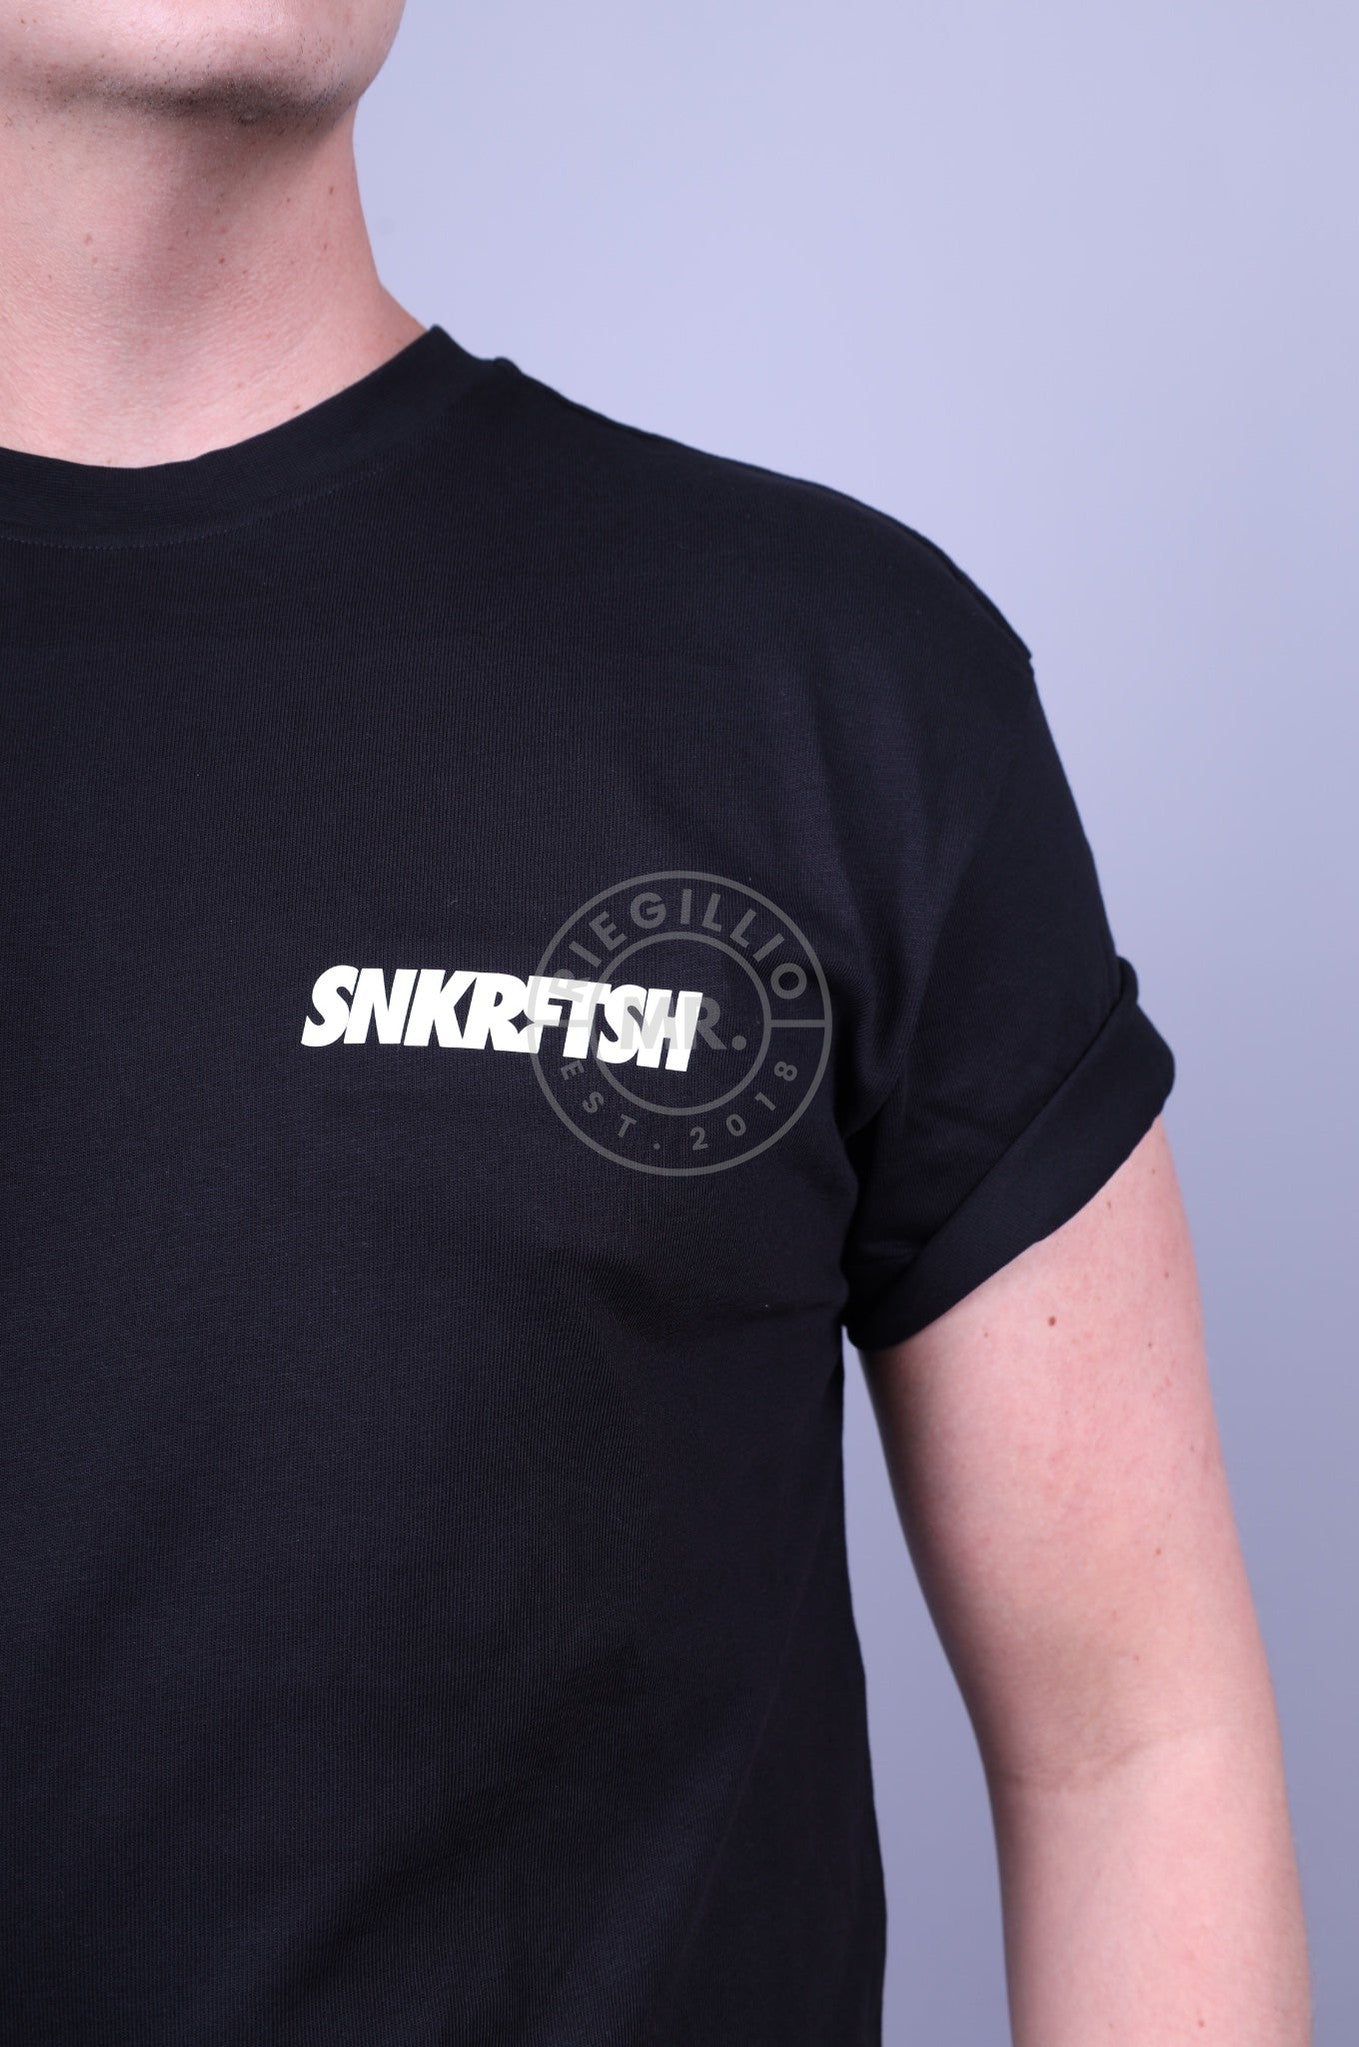 SNKRFTSH Logo T-shirt-at MR. Riegillio